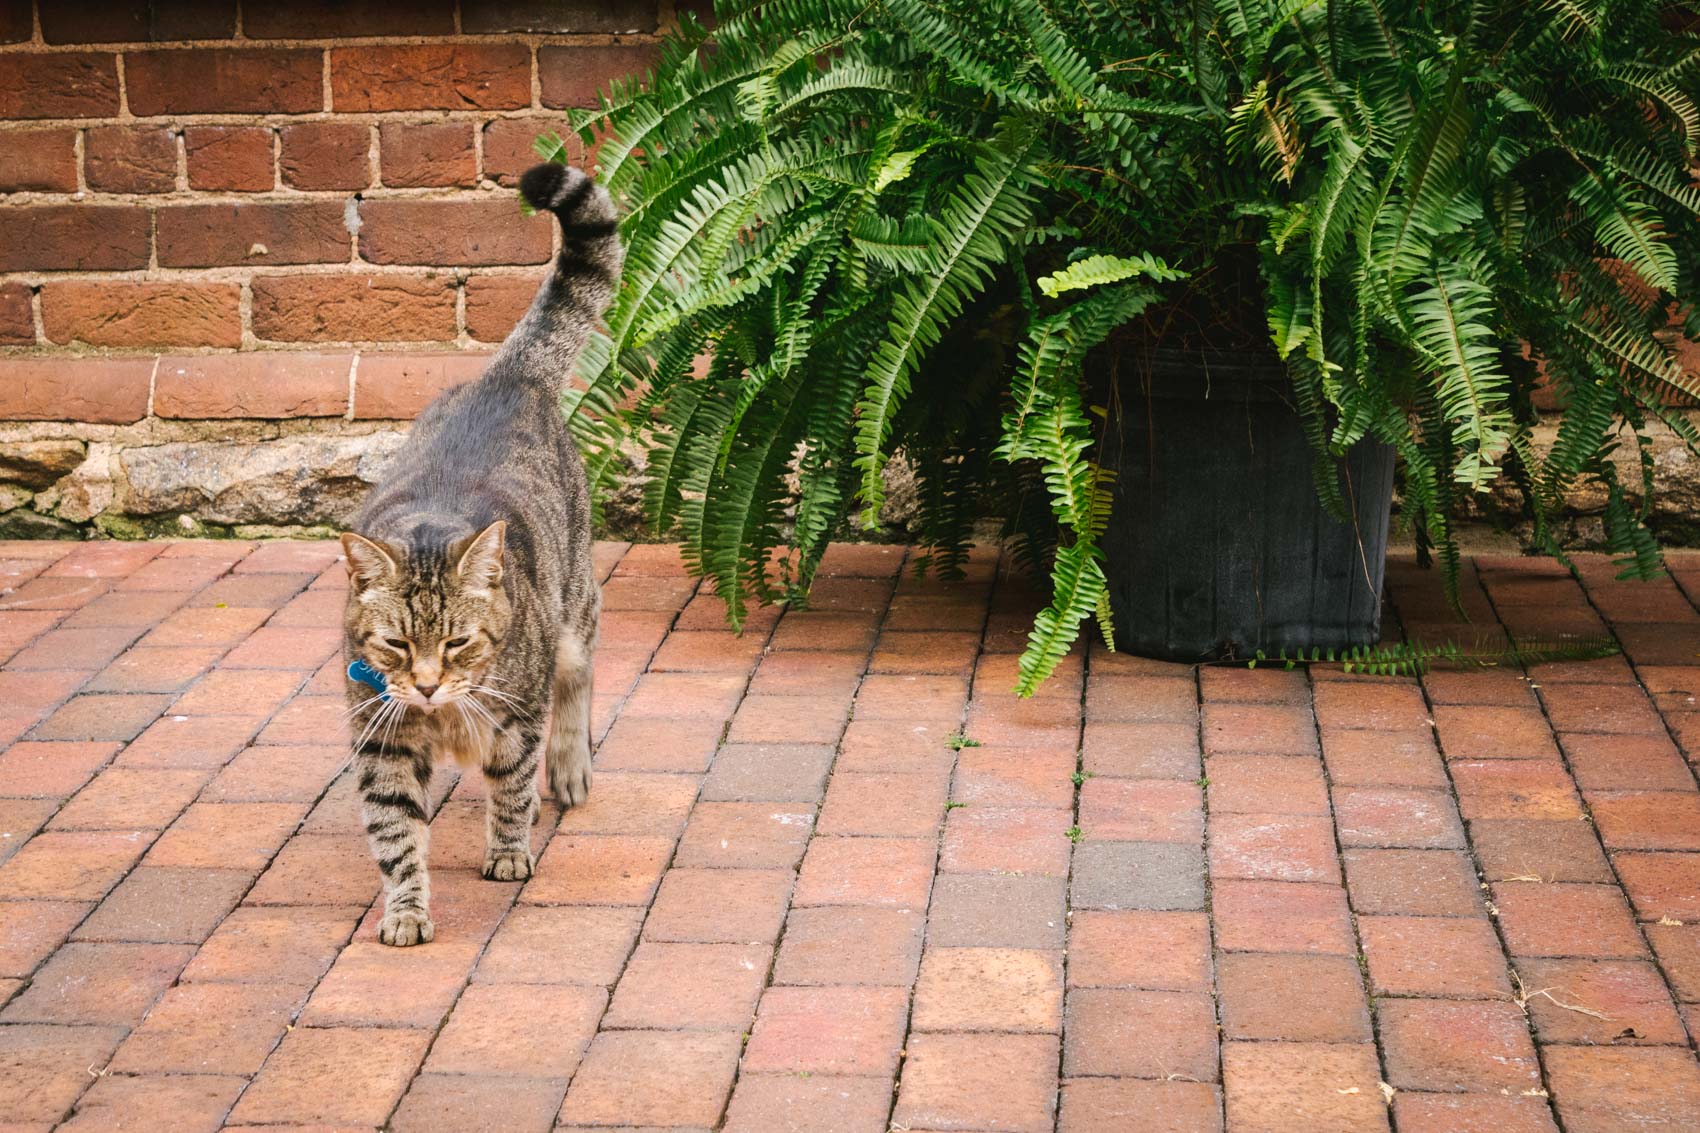 The Brookstown Inn cat, Miss Sally